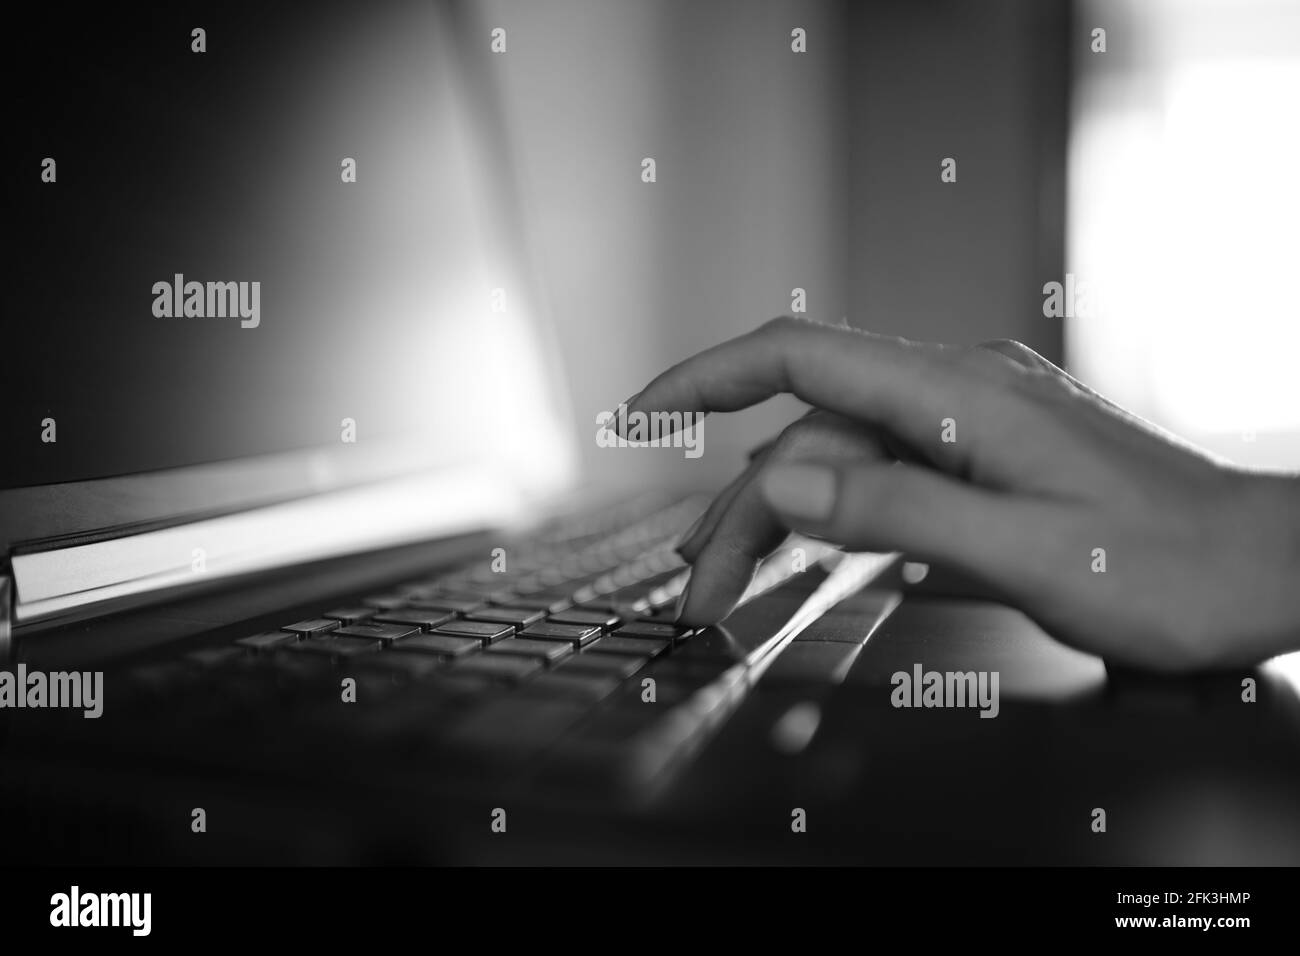 Femme dactylographiant à la main sur un clavier d'ordinateur portable. Photo noir et blanc. Banque D'Images